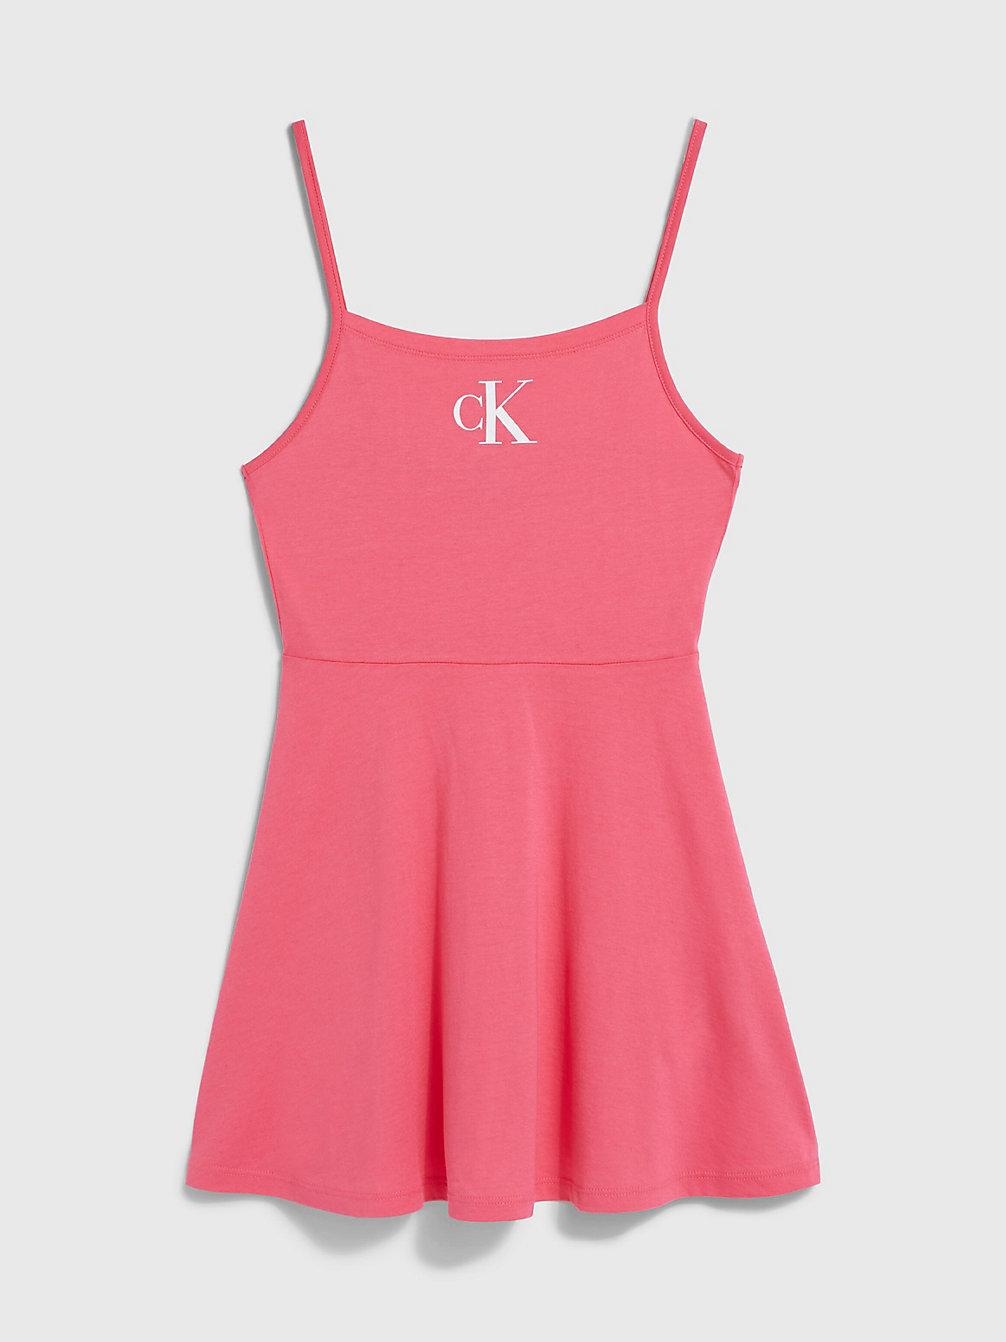 PINK FLASH Robe De Plage Pour Fille - CK Monogram undefined girls Calvin Klein